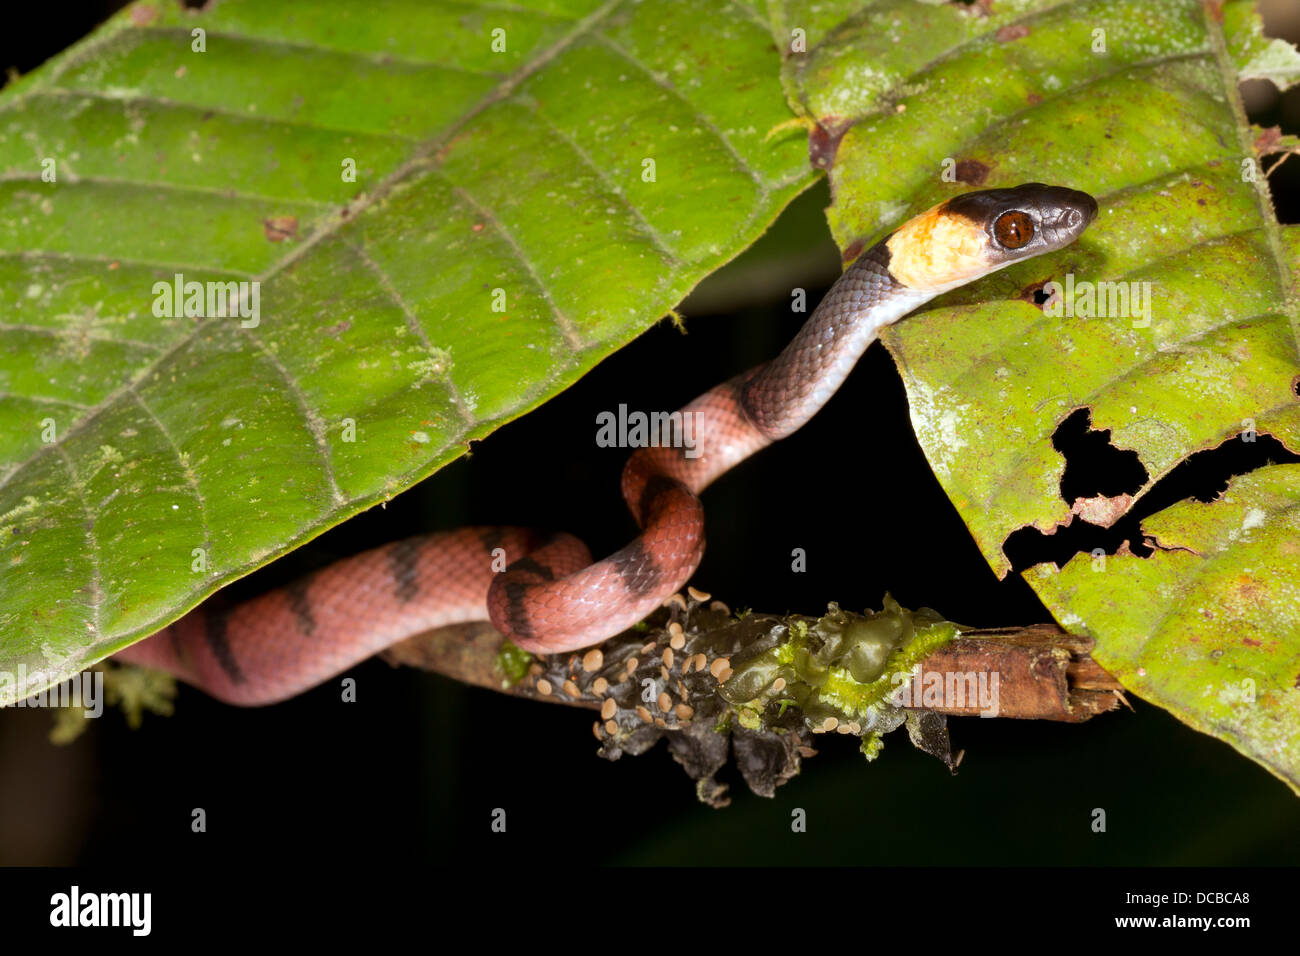 Amazon Serpiente Plana (Siphlophis compressus) escalada en un arbusto en la selva, Ecuador Foto de stock